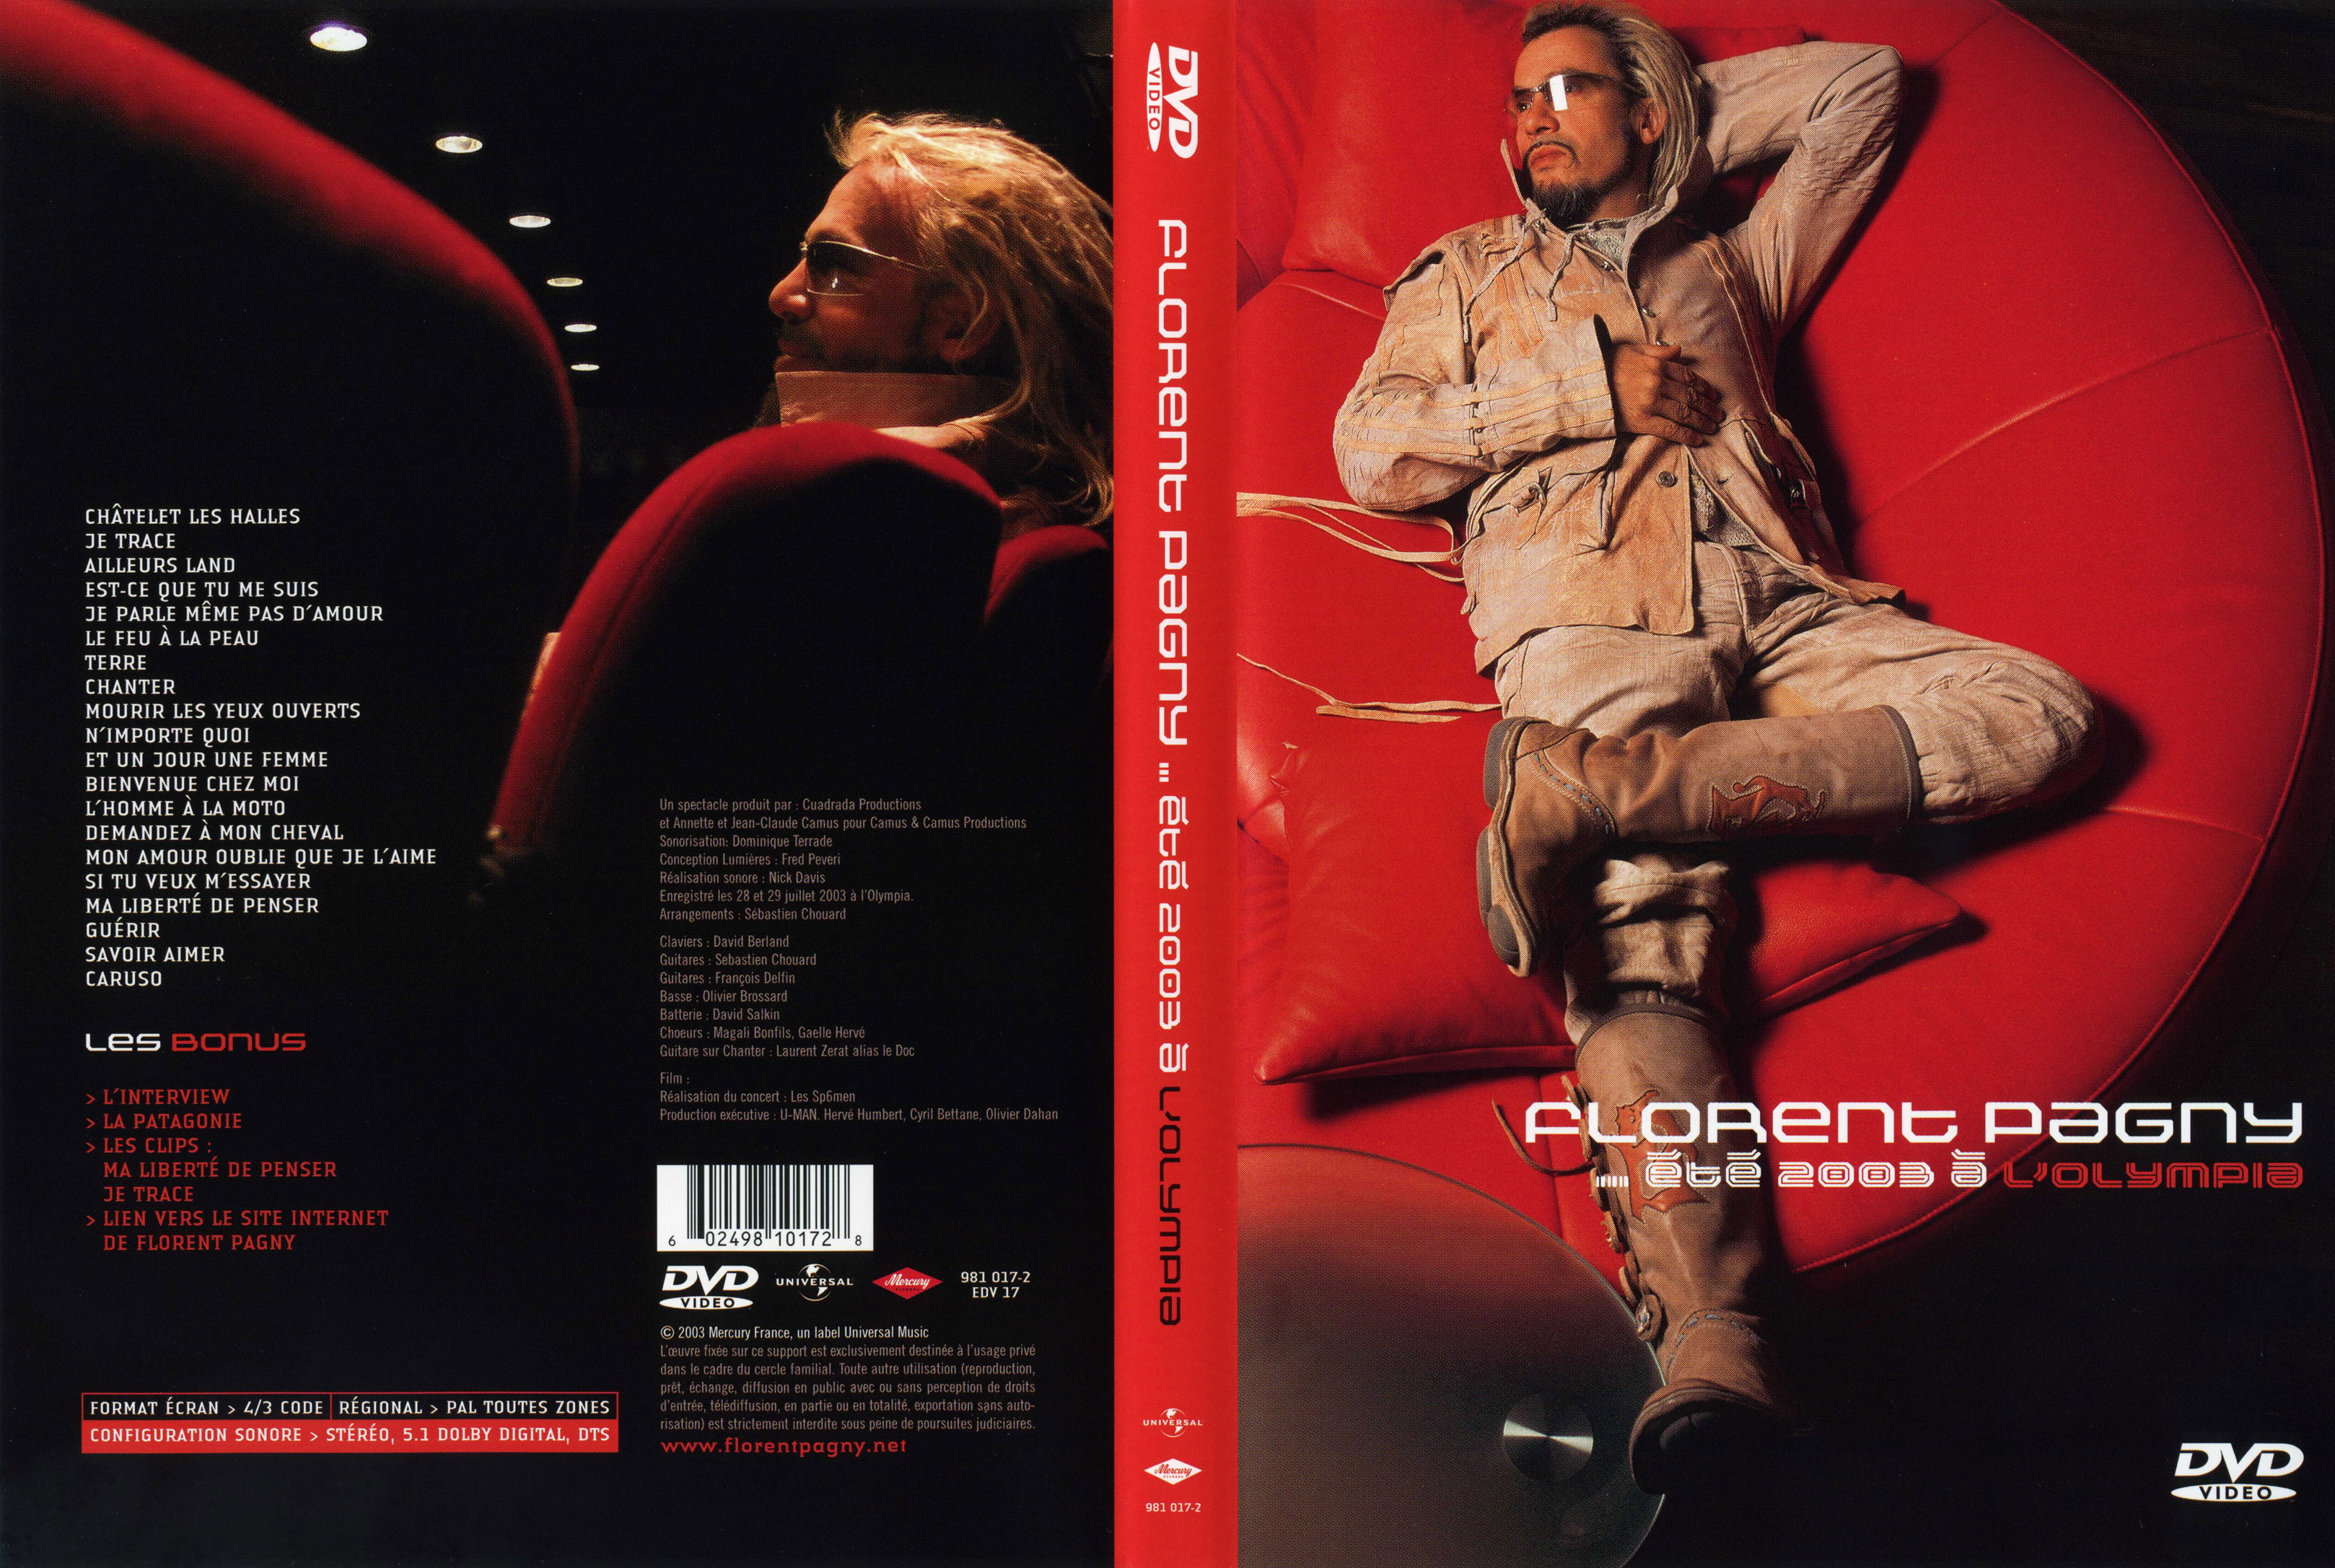 Jaquette DVD Florent Pagny t 2003  l